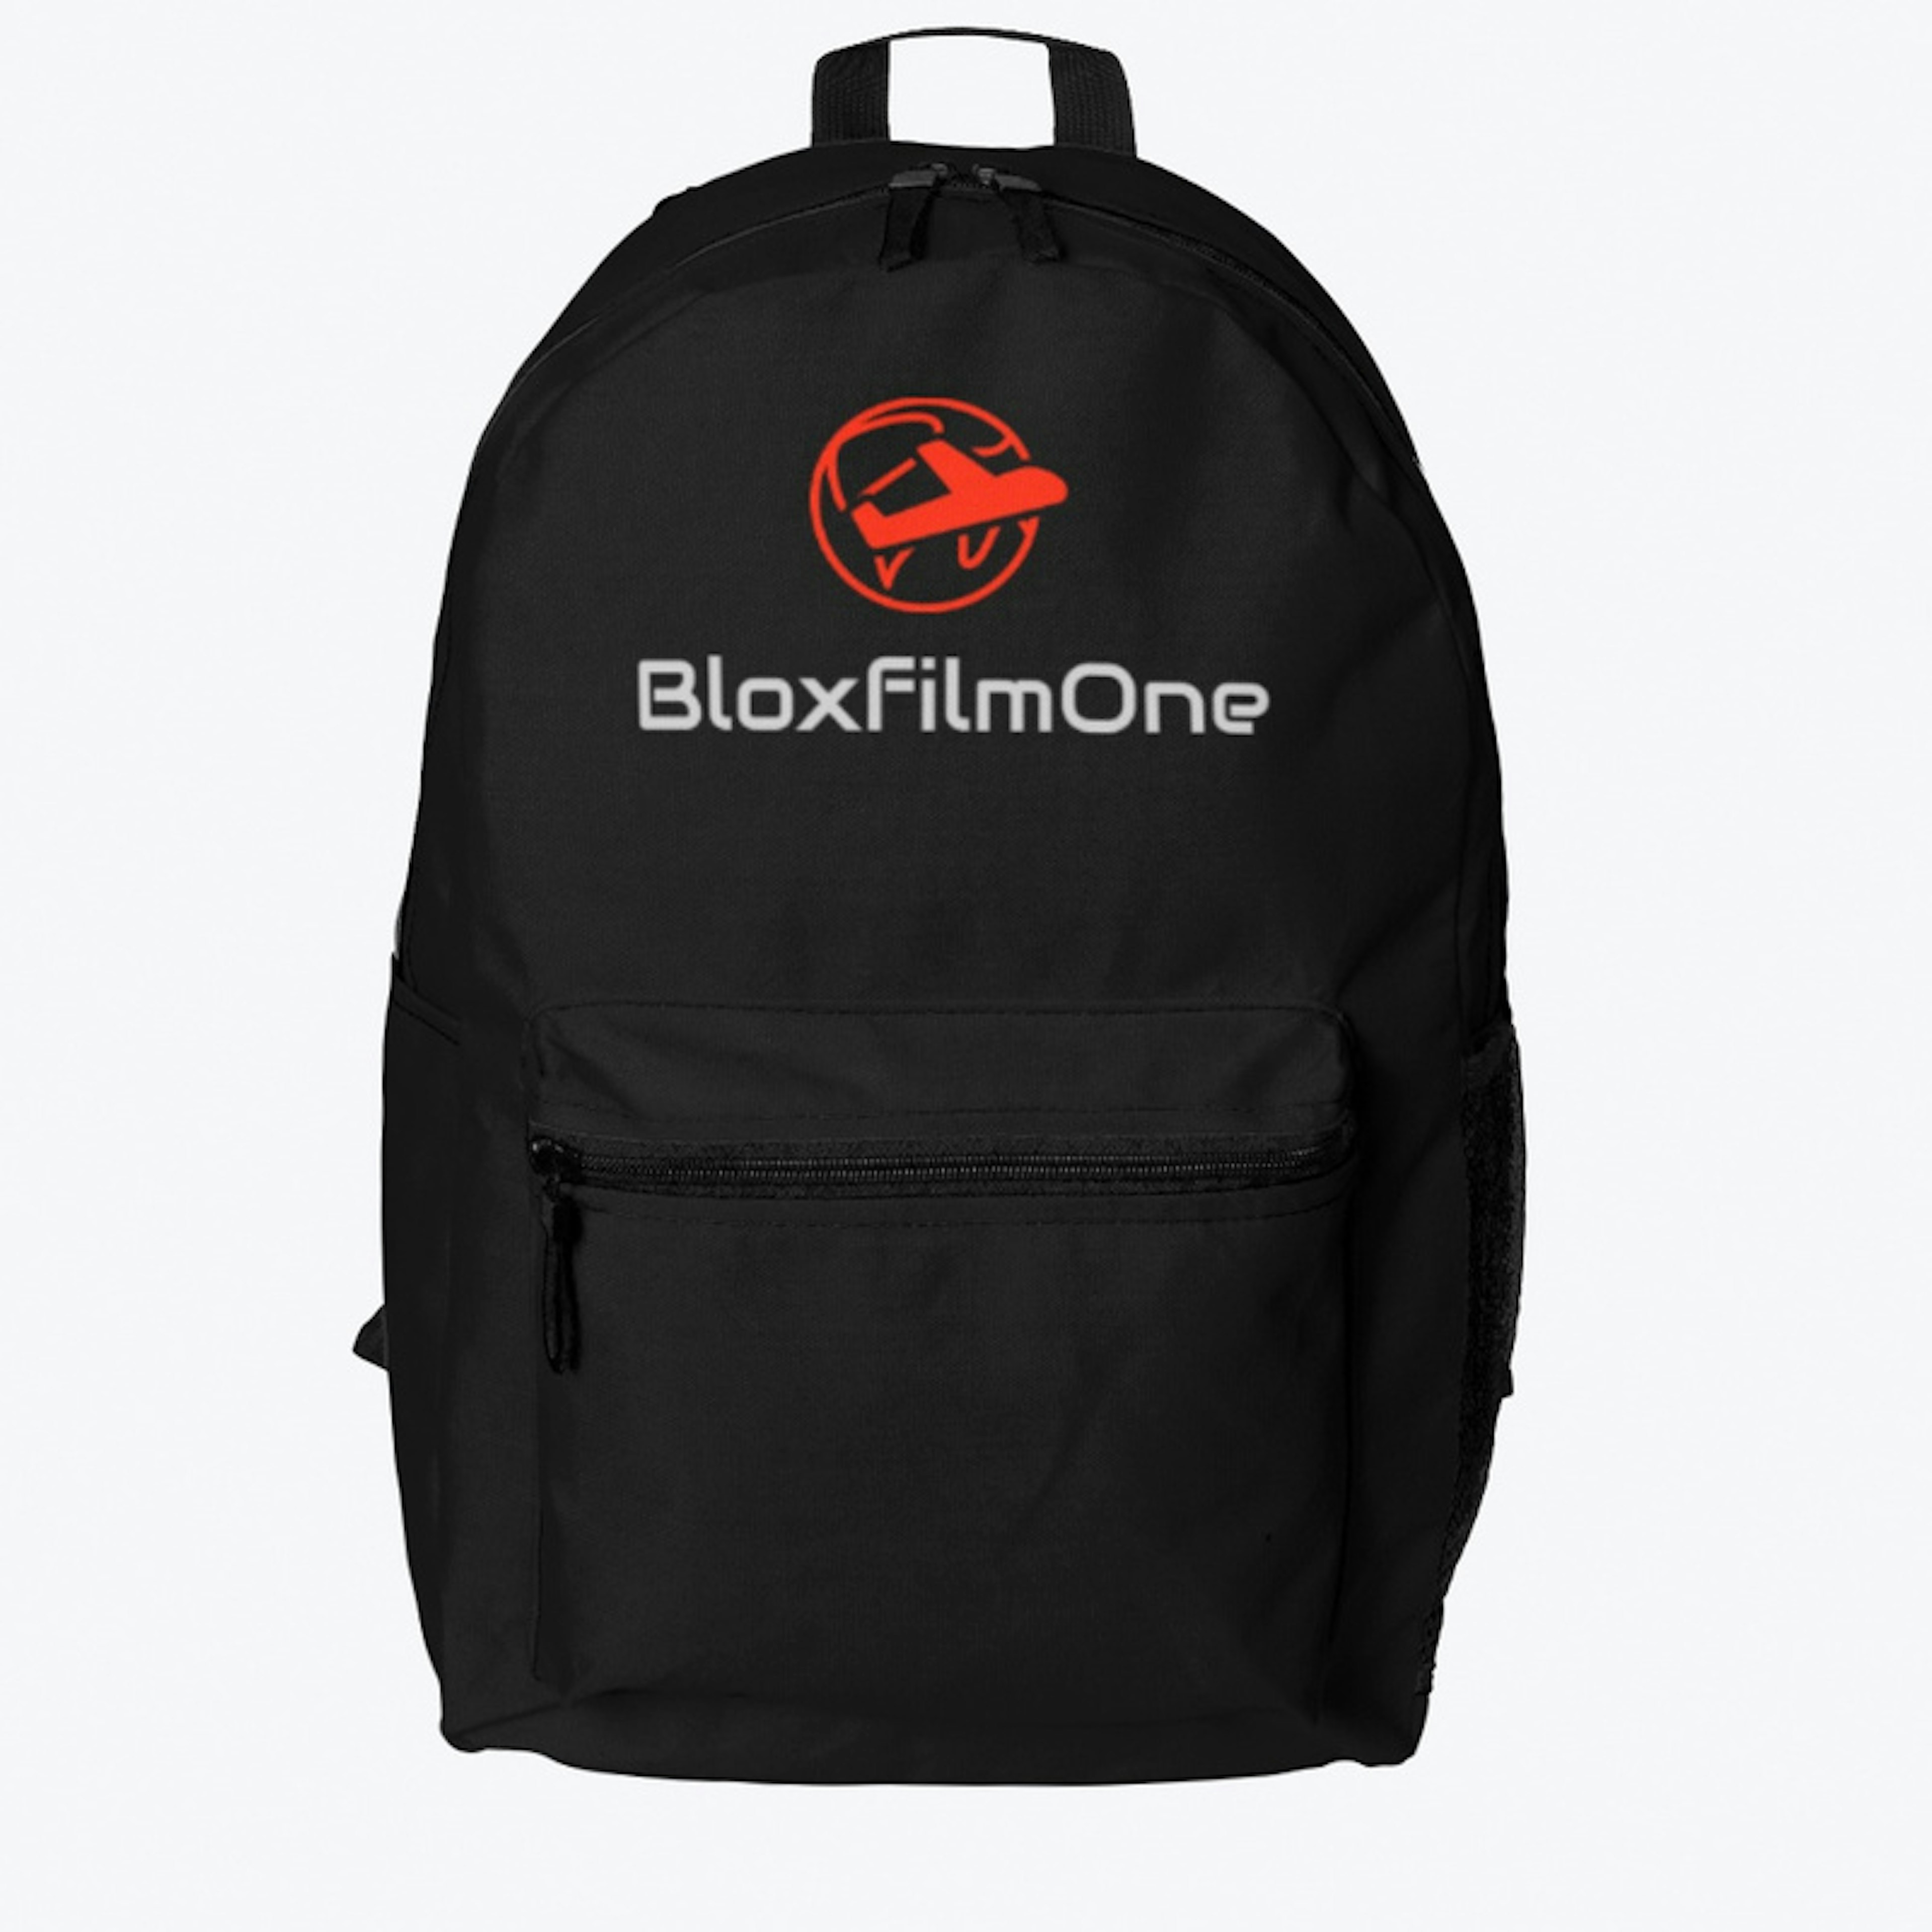 BloxfilmOne Travel Gear